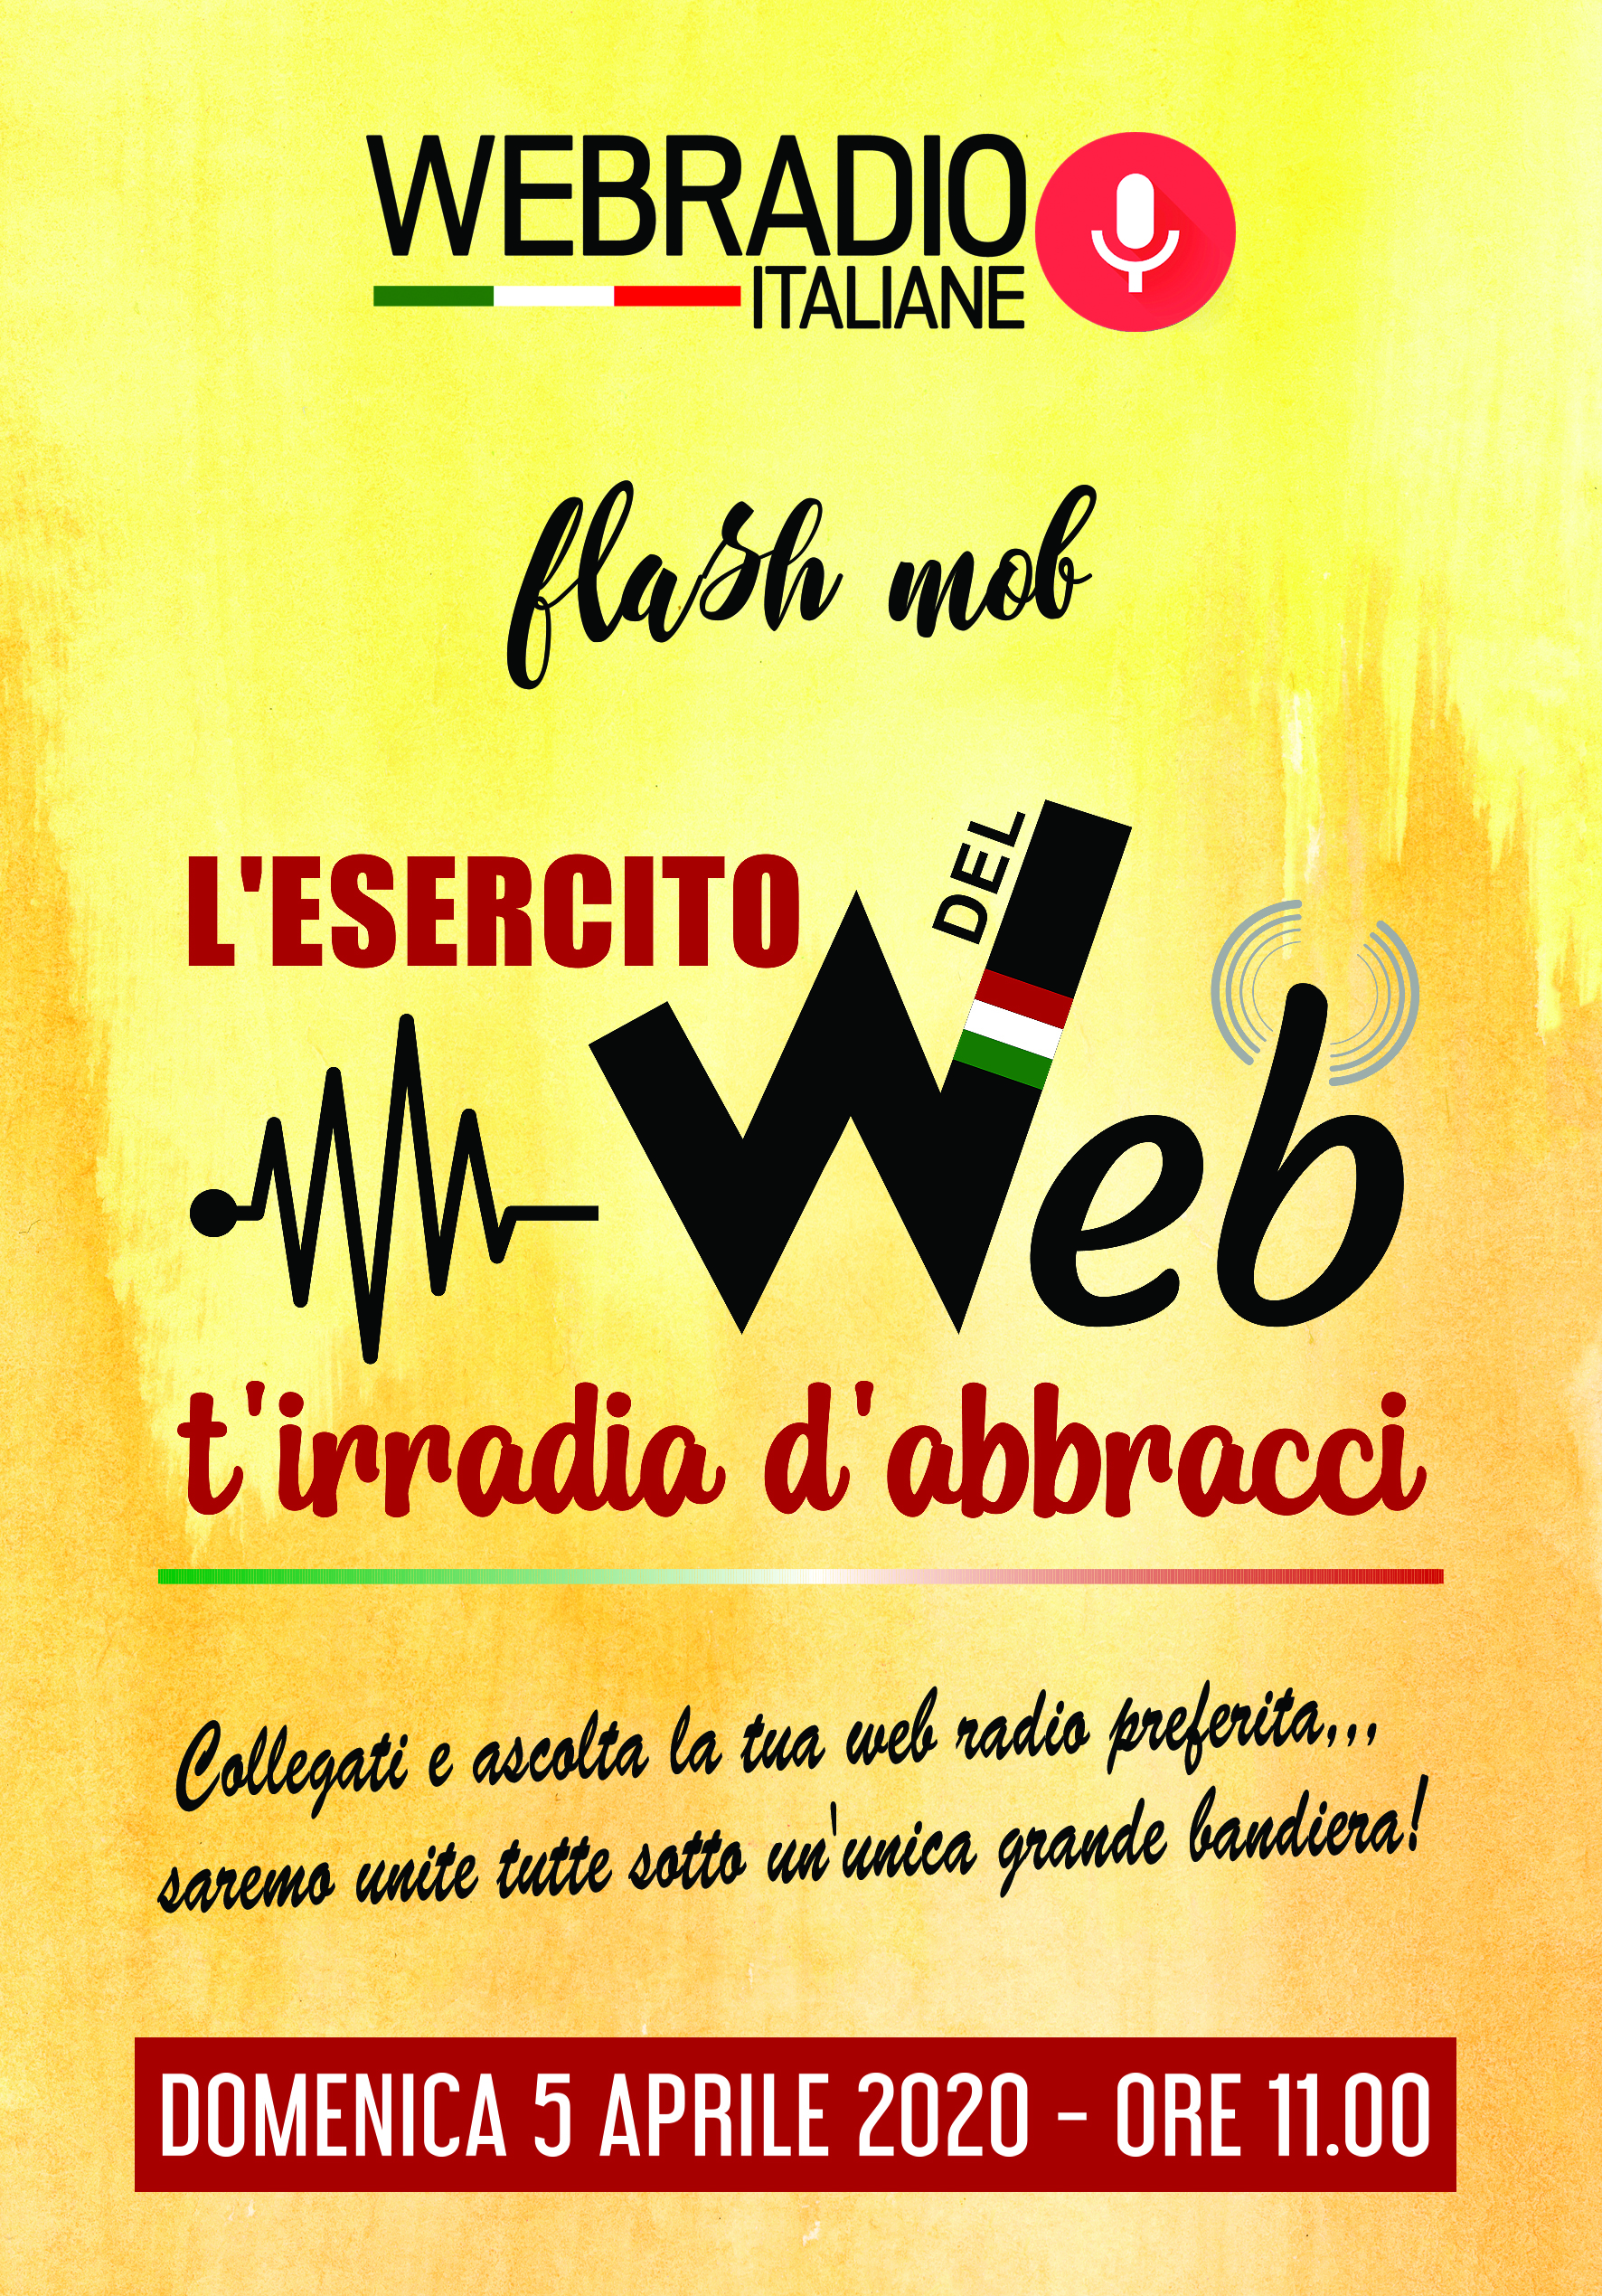 Domenica 5 aprile flash mob “L’esercito del Web t’irradia d’abbracci”